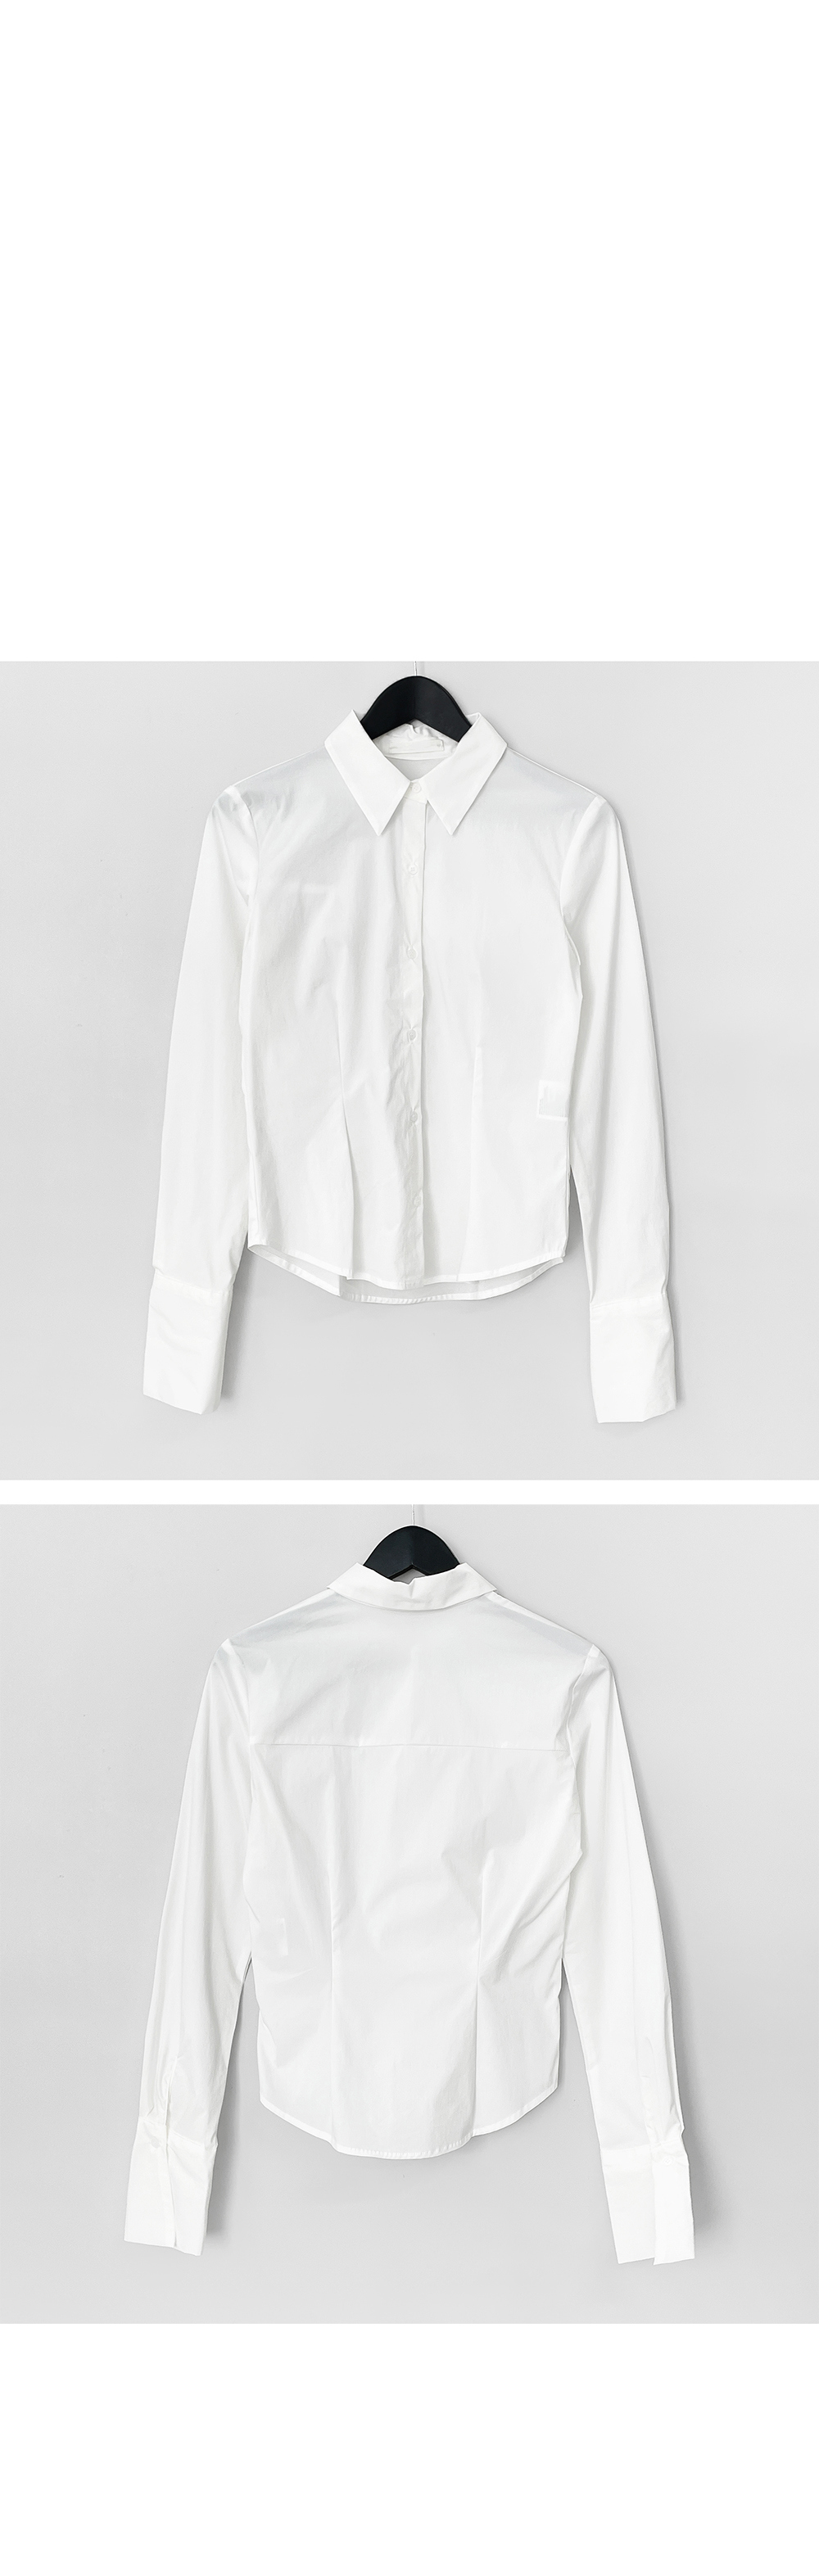 Jacket white color image-S1L8